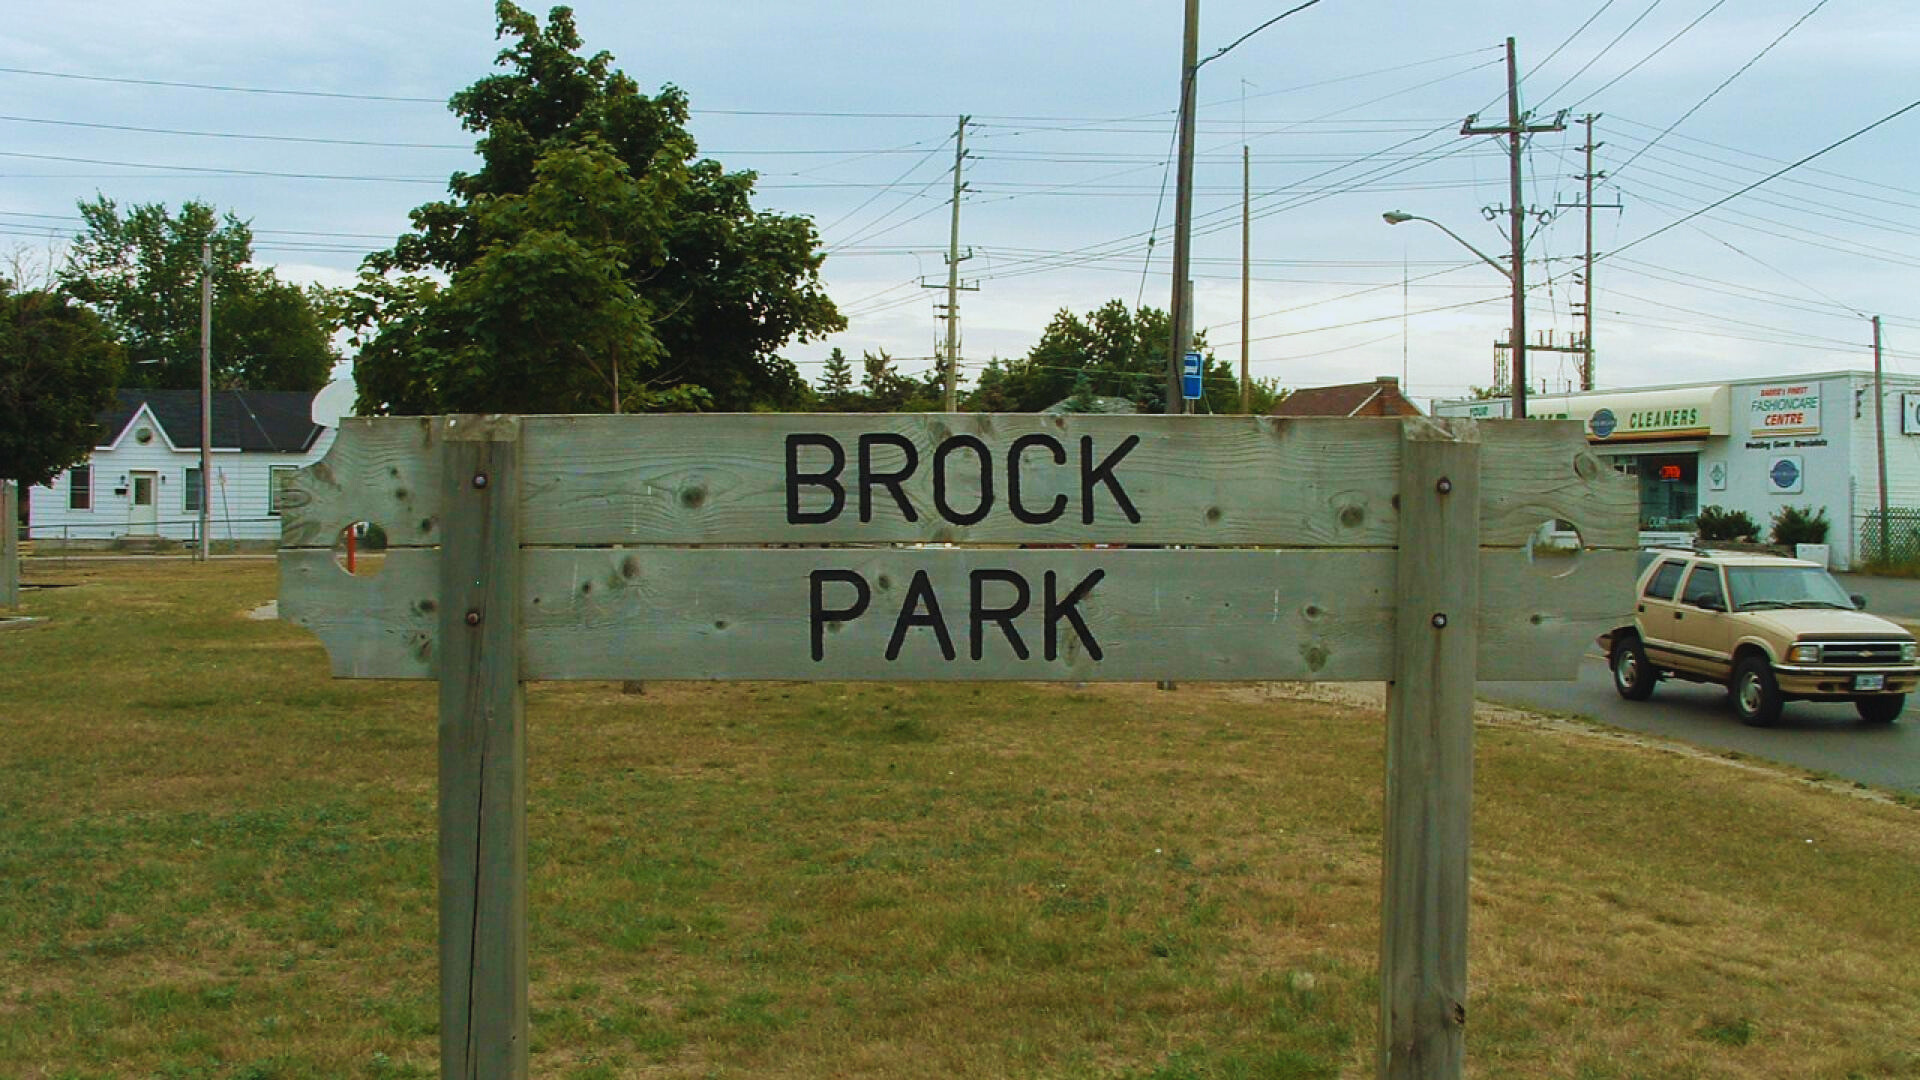 Parkbench Brock Park Neighborhood